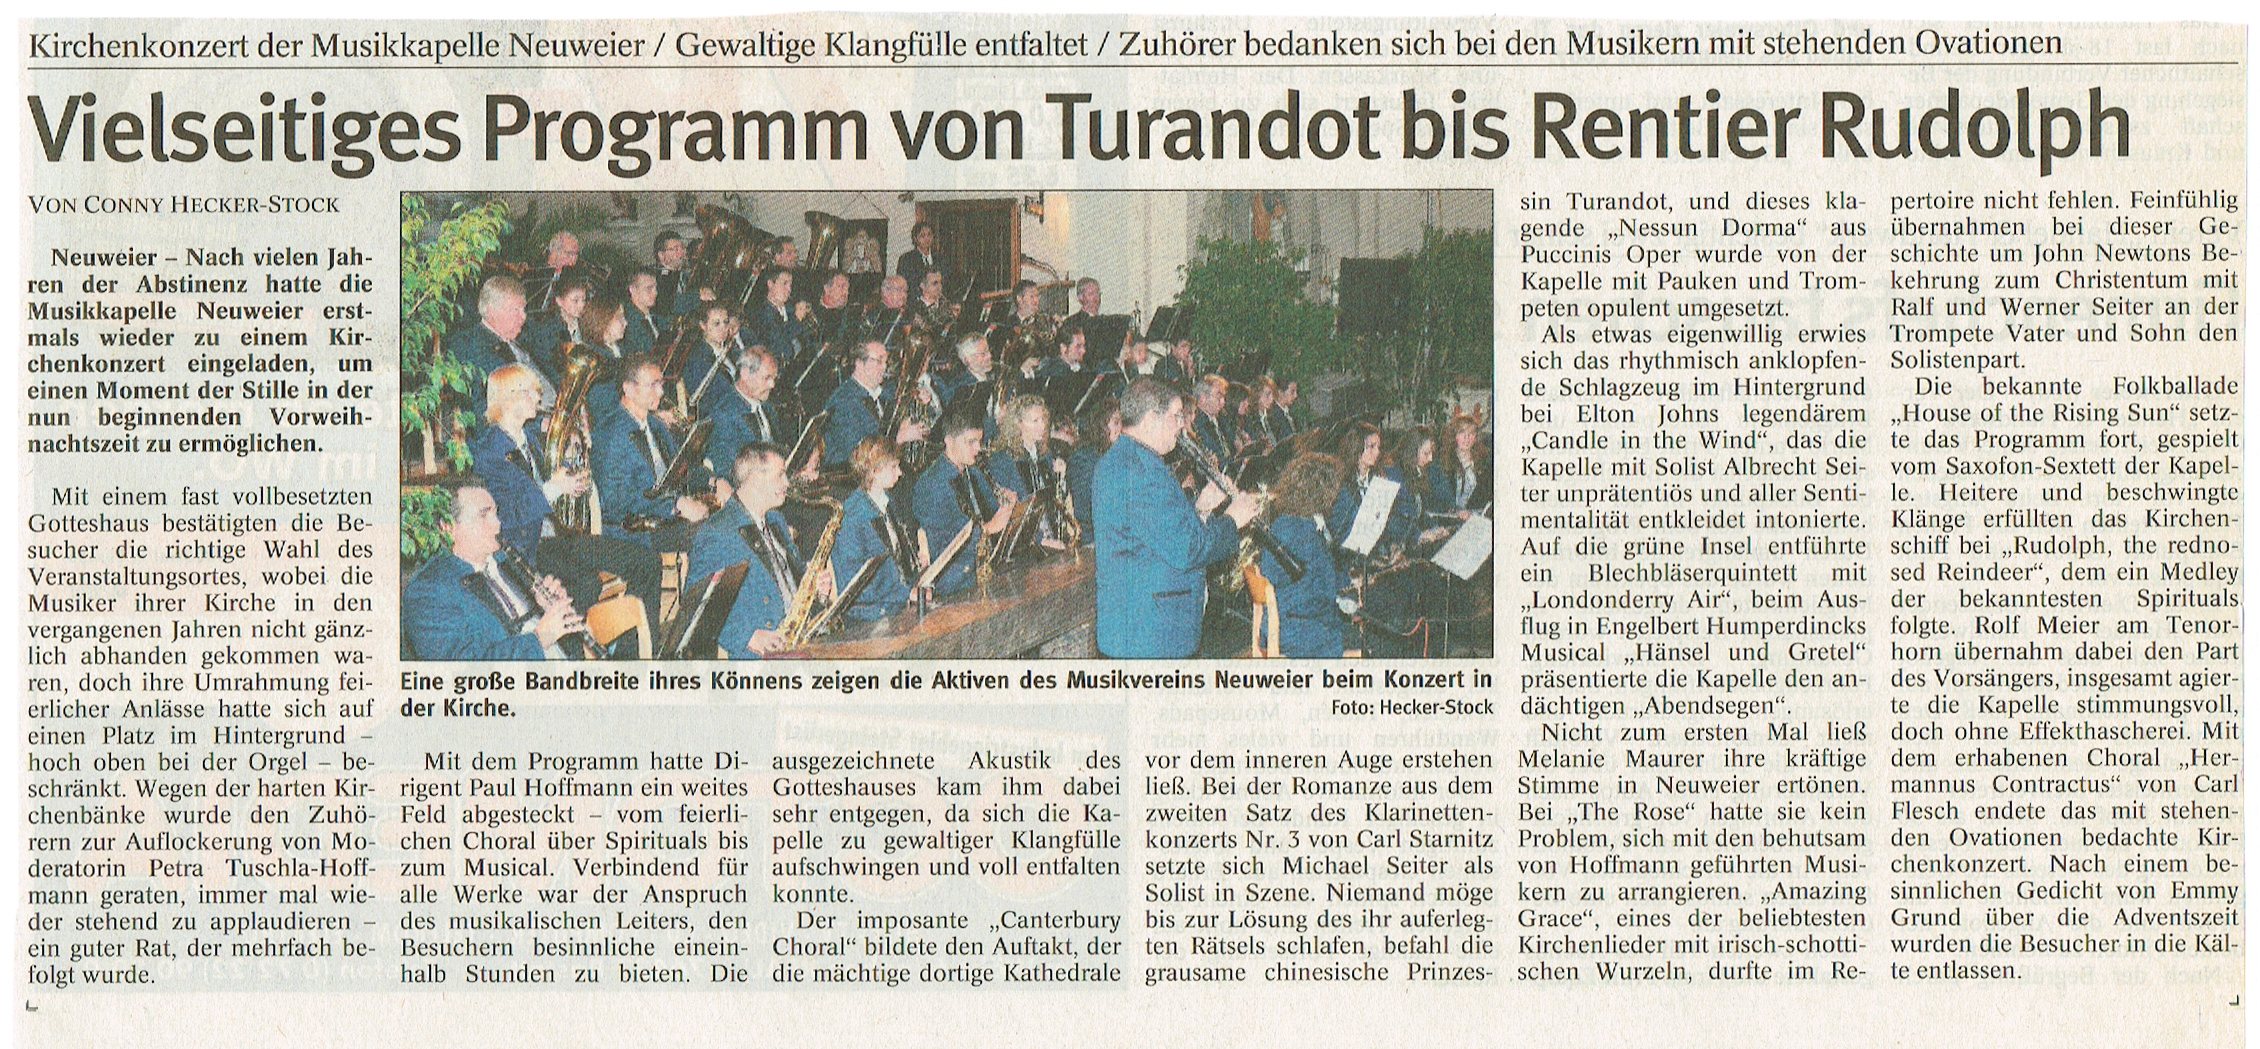 2007 BT - Vielseitiges Programm von Turandot bis Rentier Rudolph